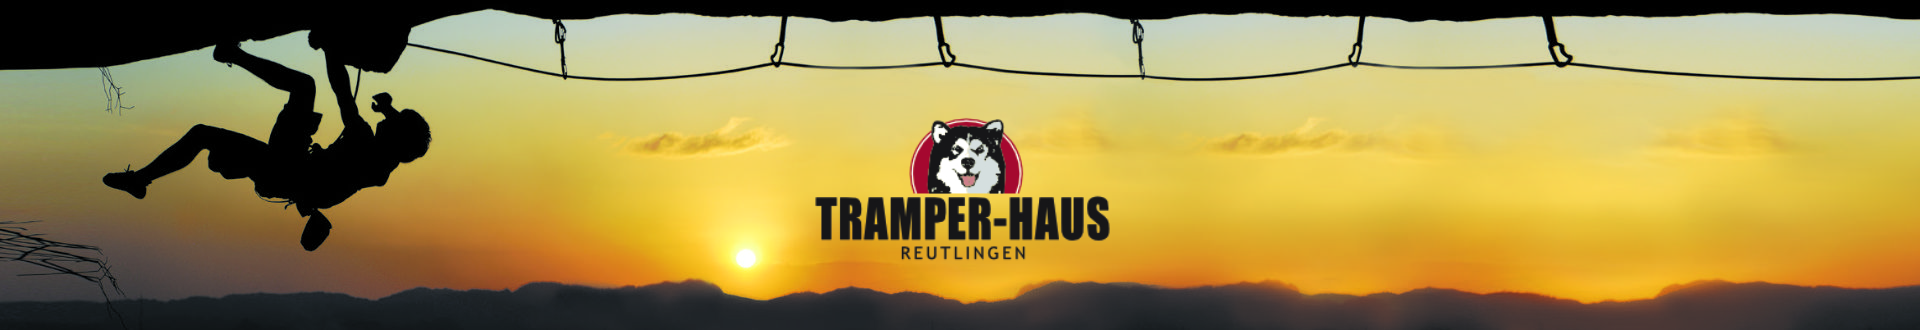 Tramper-Haus Reutlingen GmbH